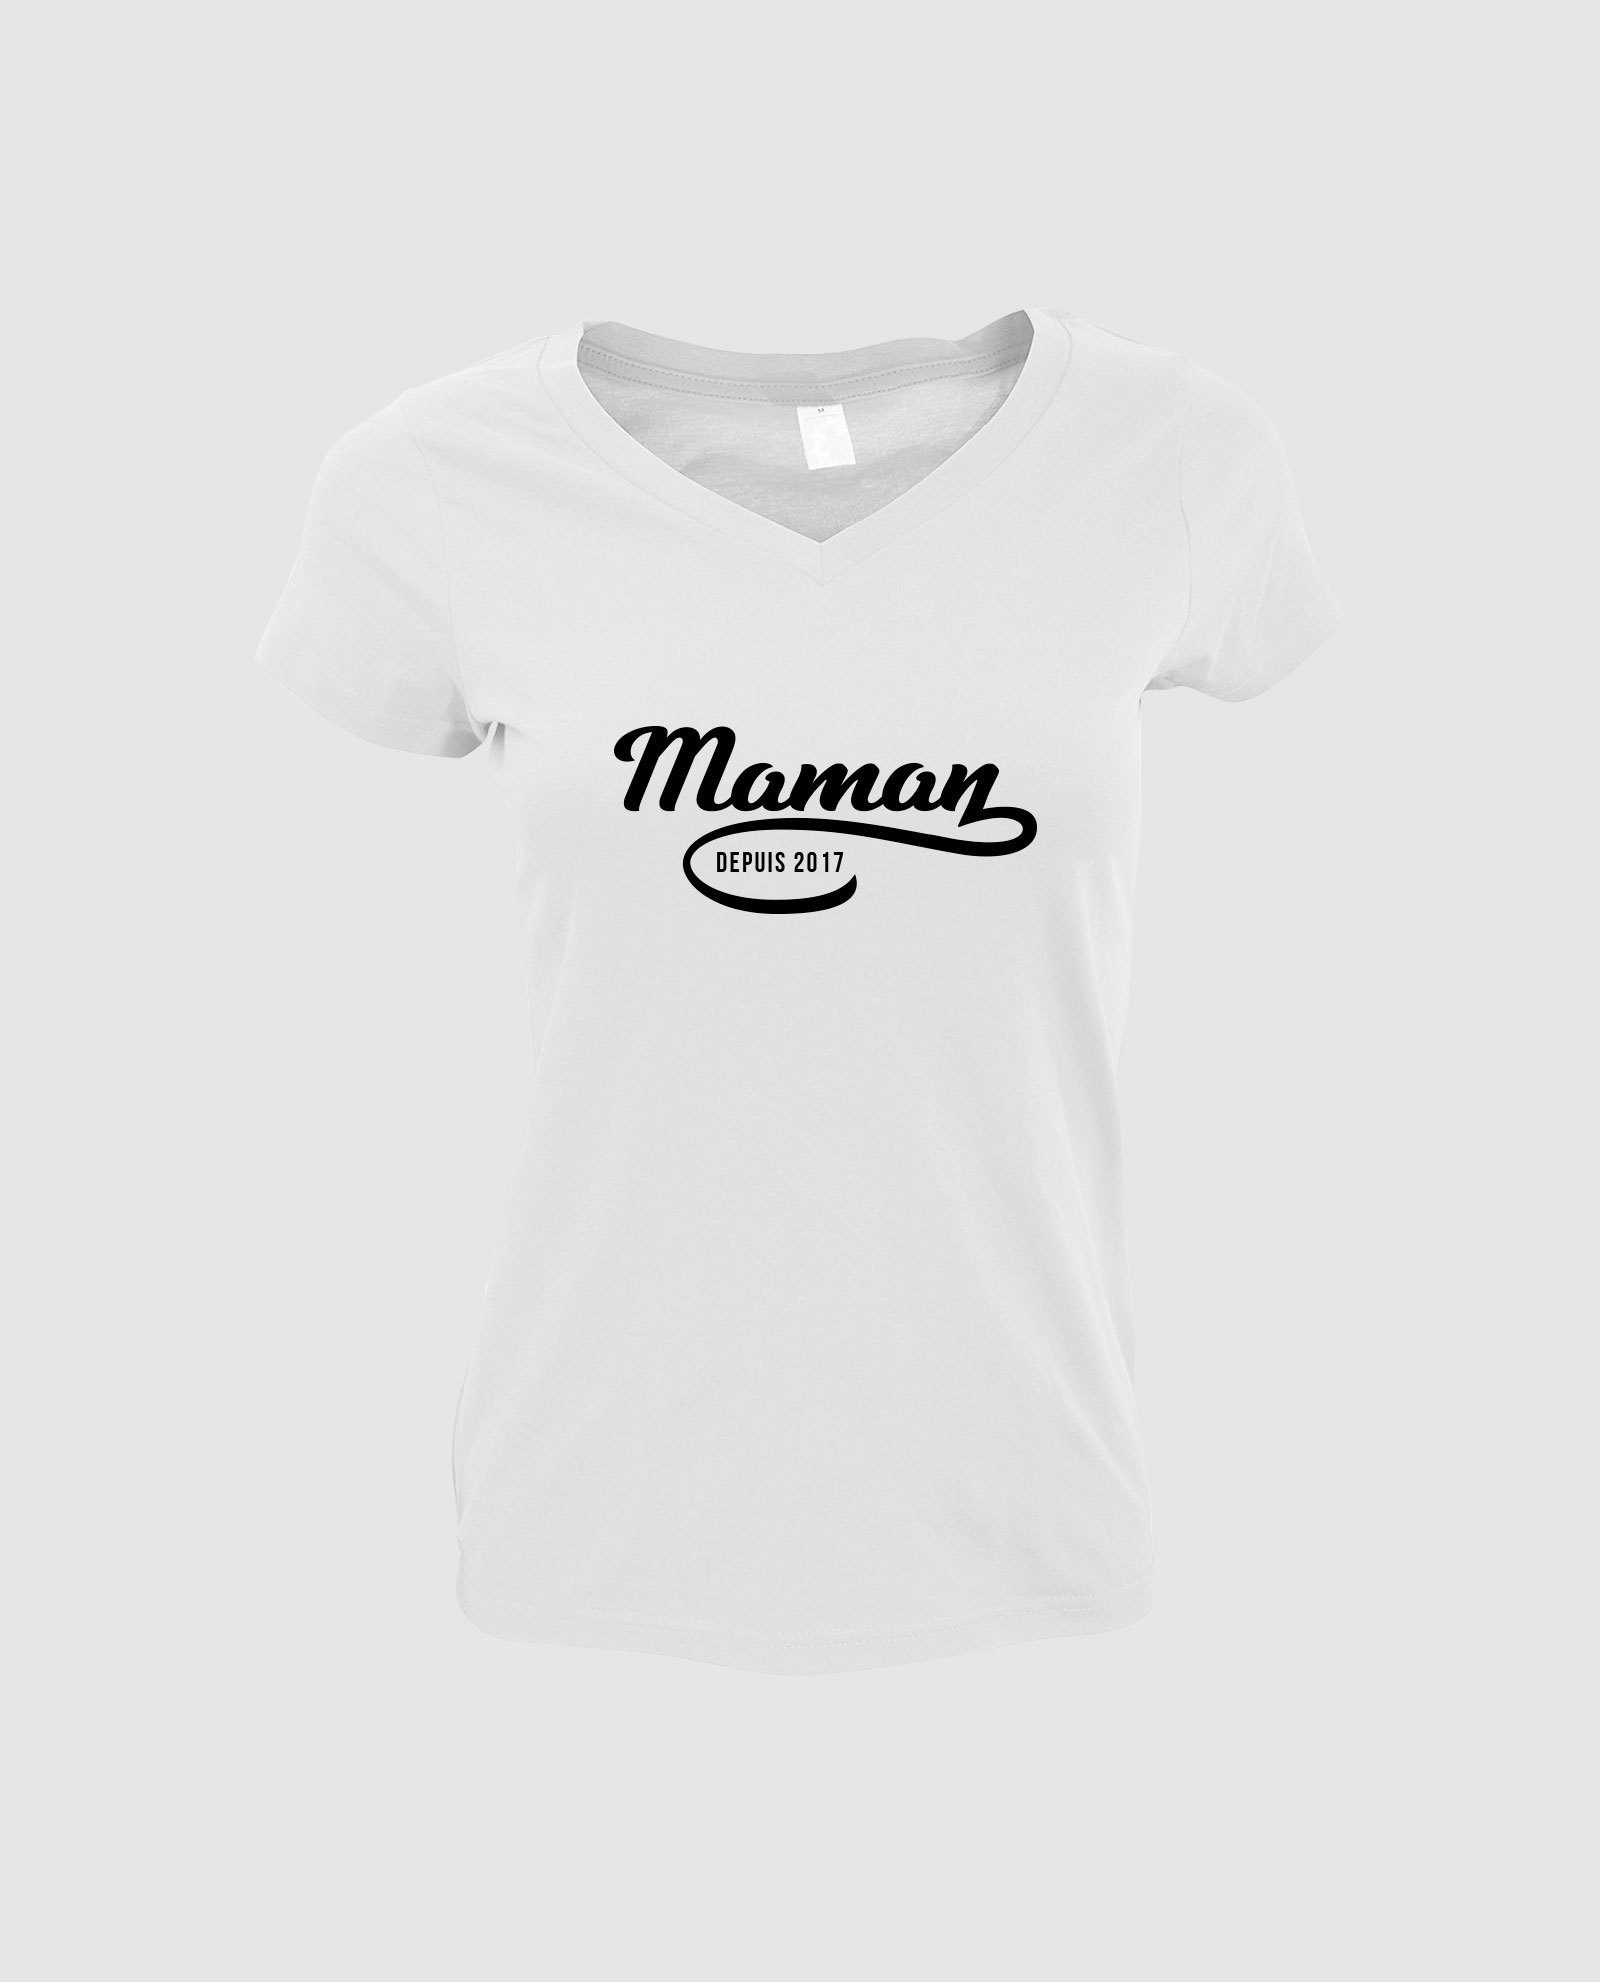 Tee shirt fêtes des mères - La femme parfaite est - personnalisable